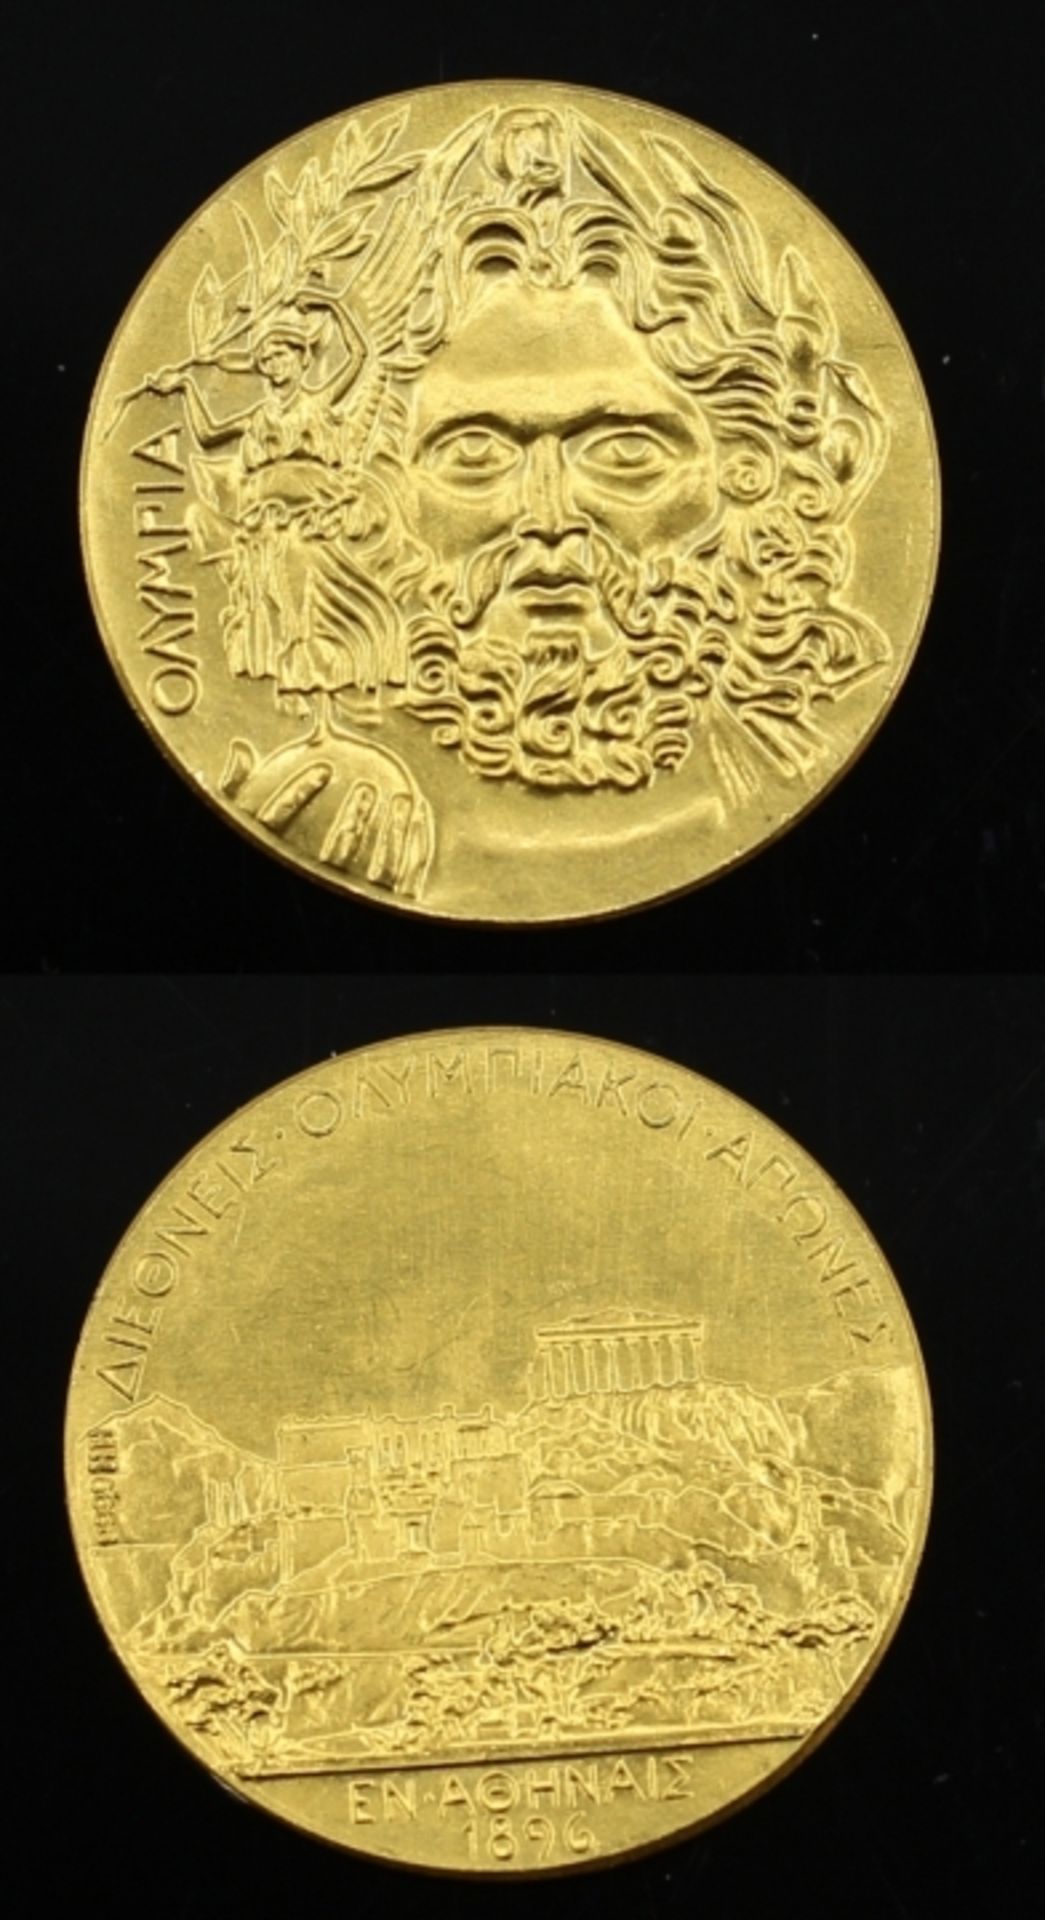 Goldmedaille - Athen Griechenland datiert 1896, Gelbgold 999, d.= 20,1 mm, ca. 3,15 Gramm